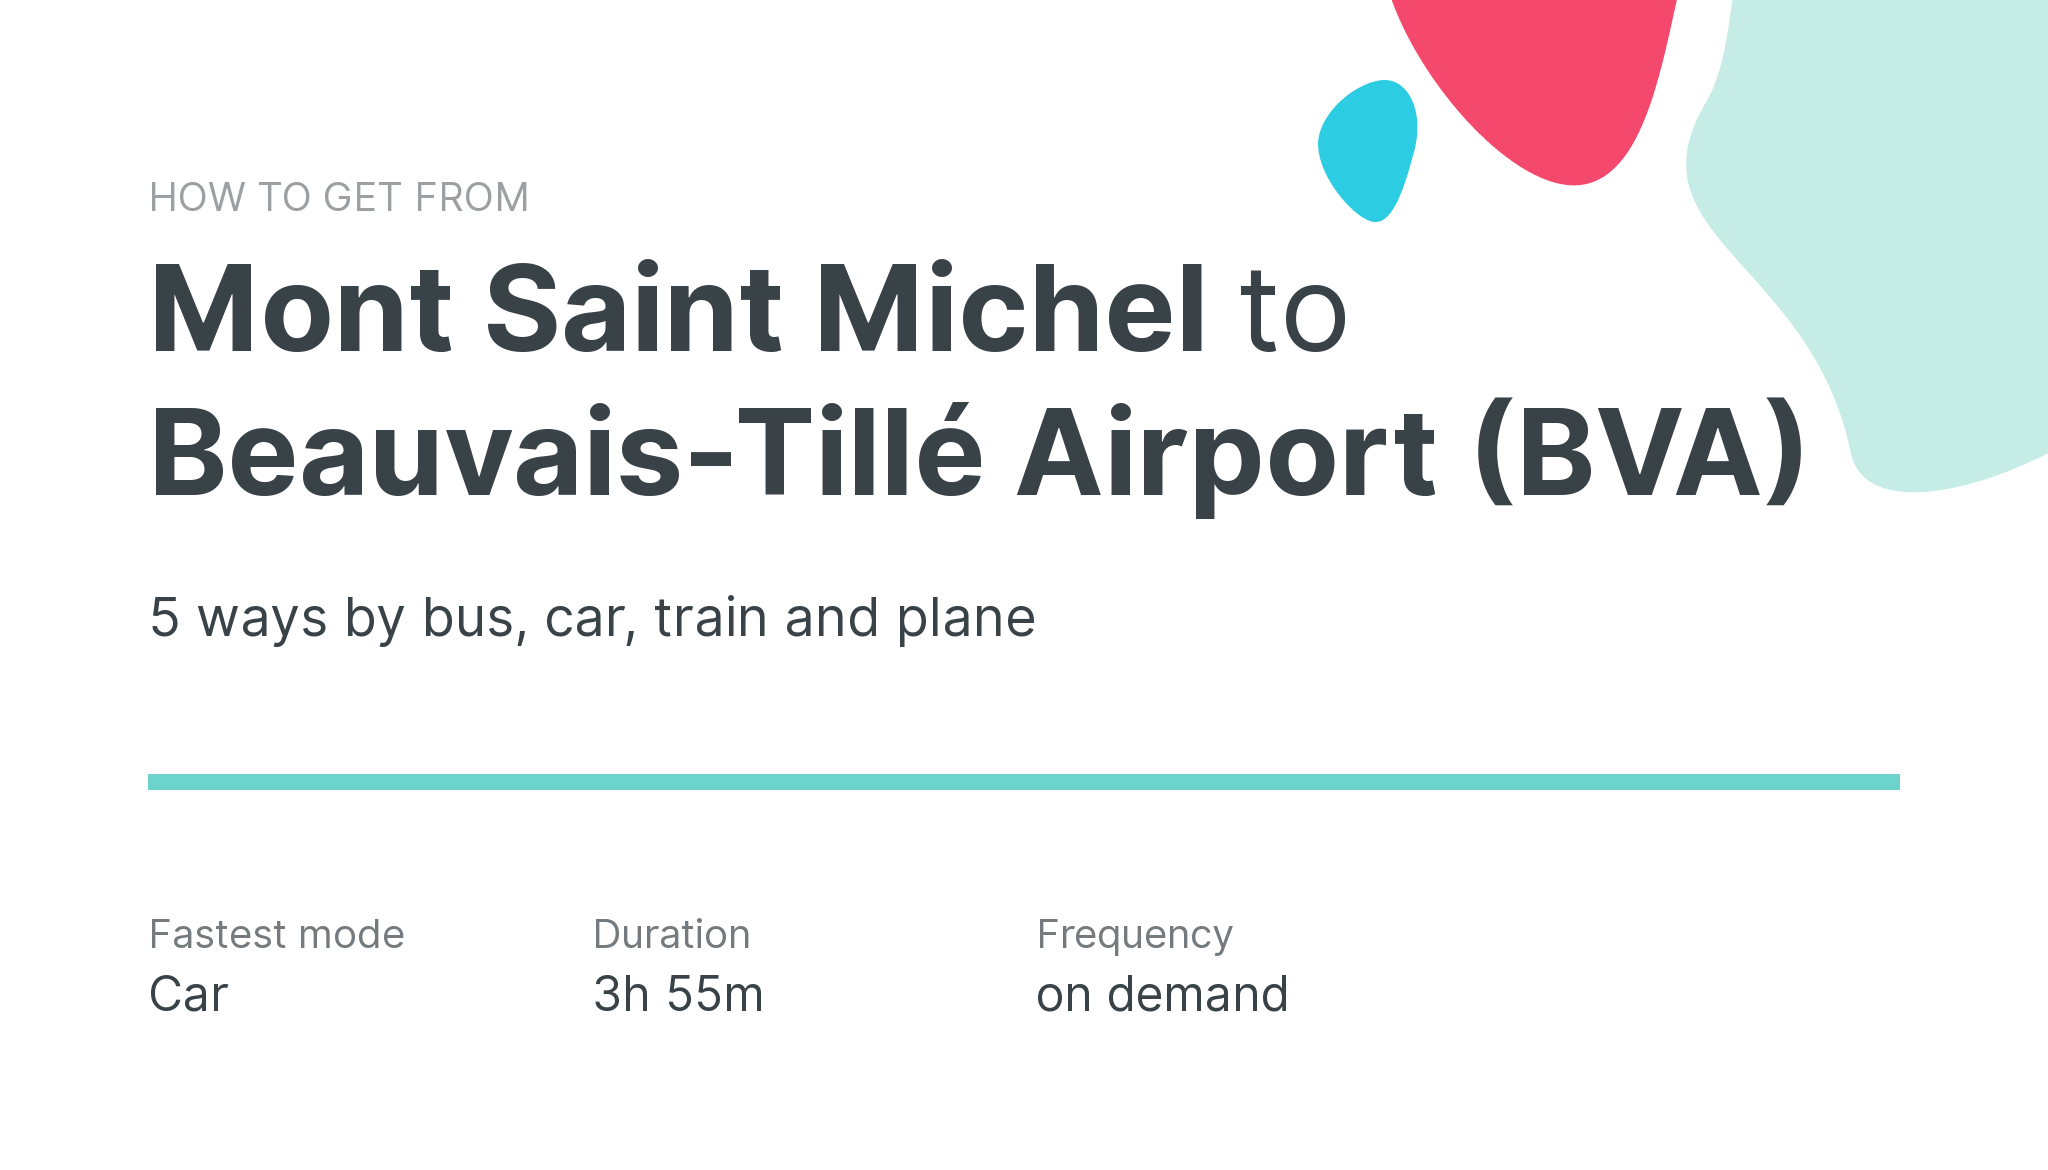 How do I get from Mont Saint Michel to Beauvais-Tillé Airport (BVA)